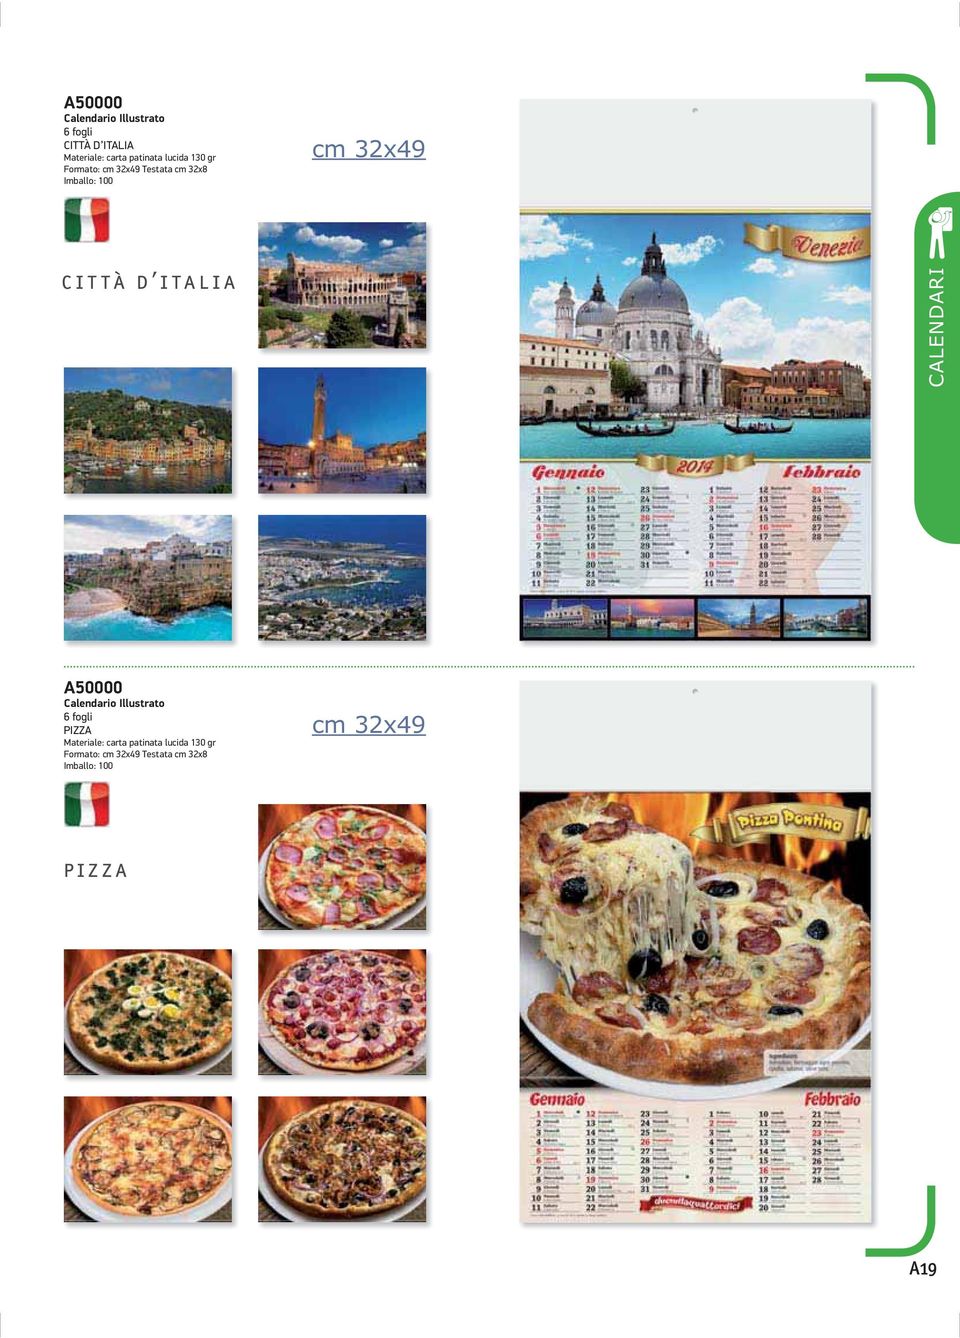 d italia CALENDARI A50000 Calendario Illustrato 6 fogli PIZZA Materiale: